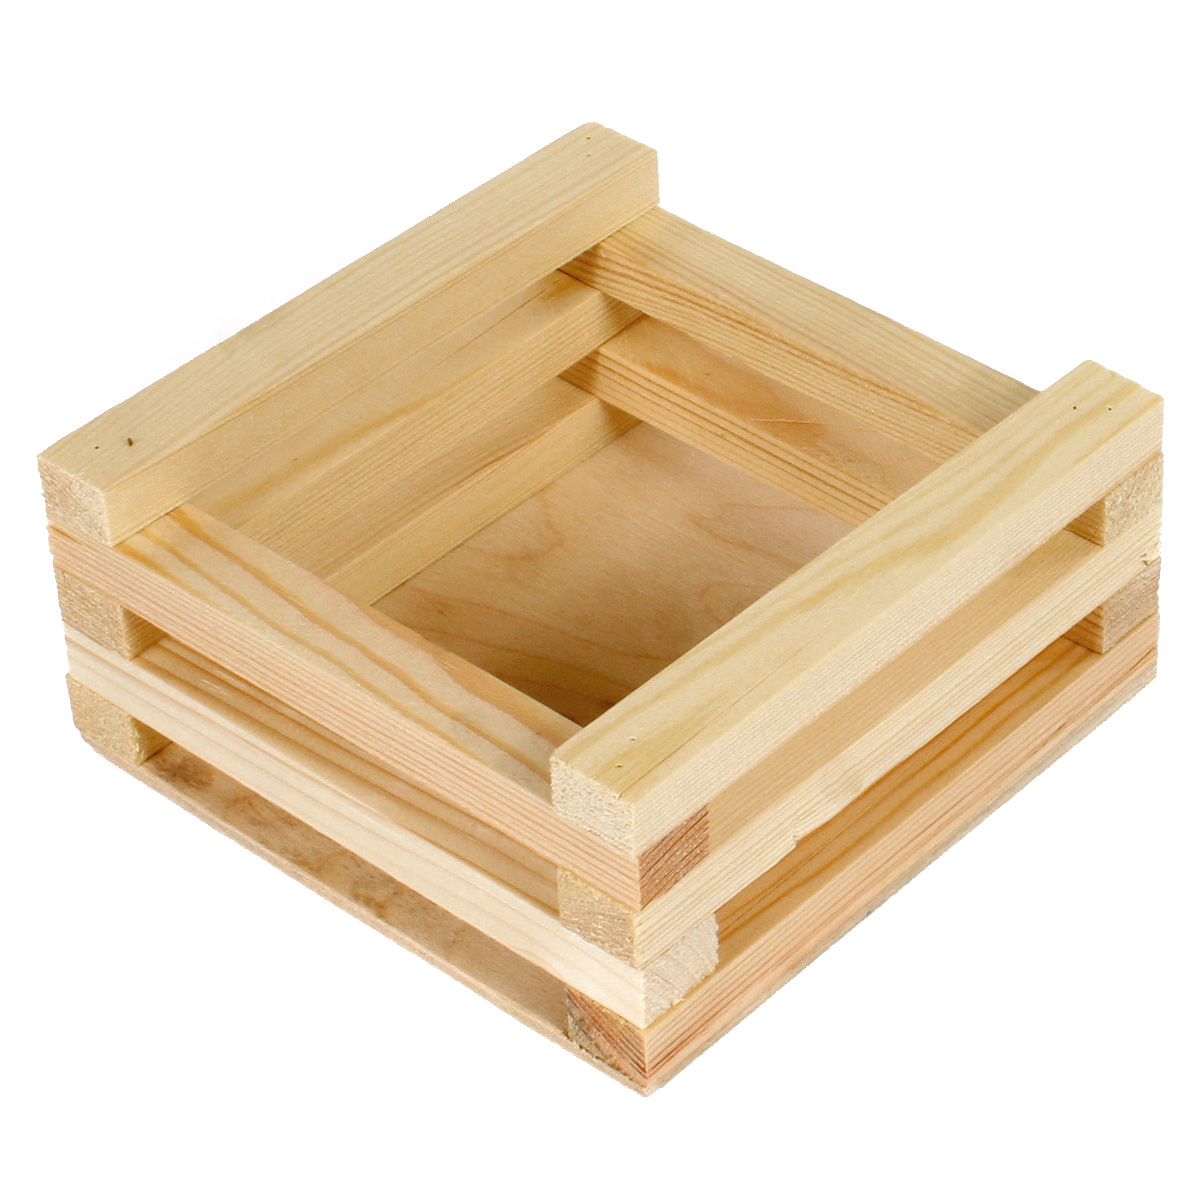 Коробка деревянная Grand Gift 135 квадратная из брусков 15х15х6 см подарочная коробка с отделением для сладостей подарочных наборов цветочных композиций